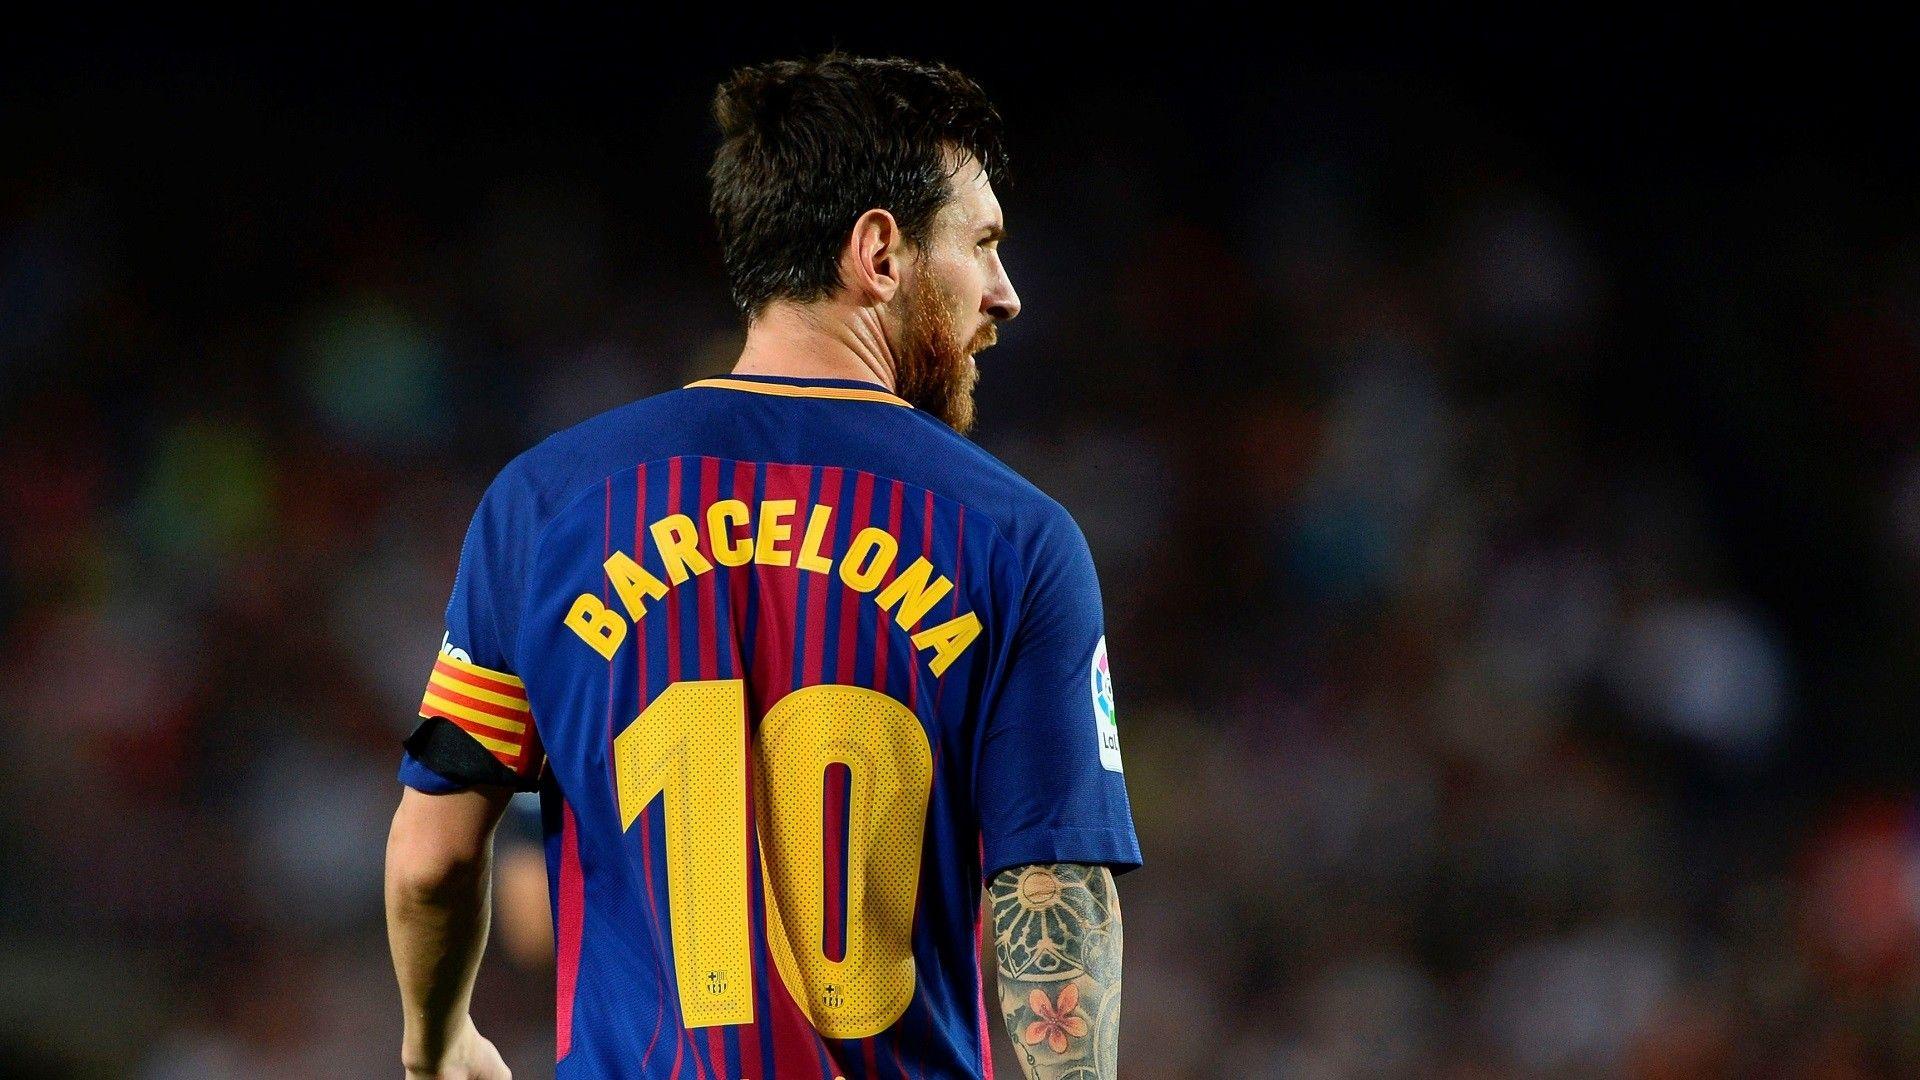 Lionel Messi: Được công nhận là một trong những cầu thủ hàng đầu thế giới, Lionel Messi luôn đảm bảo sự nổi tiếng và thành công trên sân cỏ. Bạn đang muốn tìm hiểu về vận động viên này hơn? Hãy xem hình ảnh của cậu ấy để cảm nhận tài năng, khả năng kiểm soát bóng và khả năng ghi bàn.